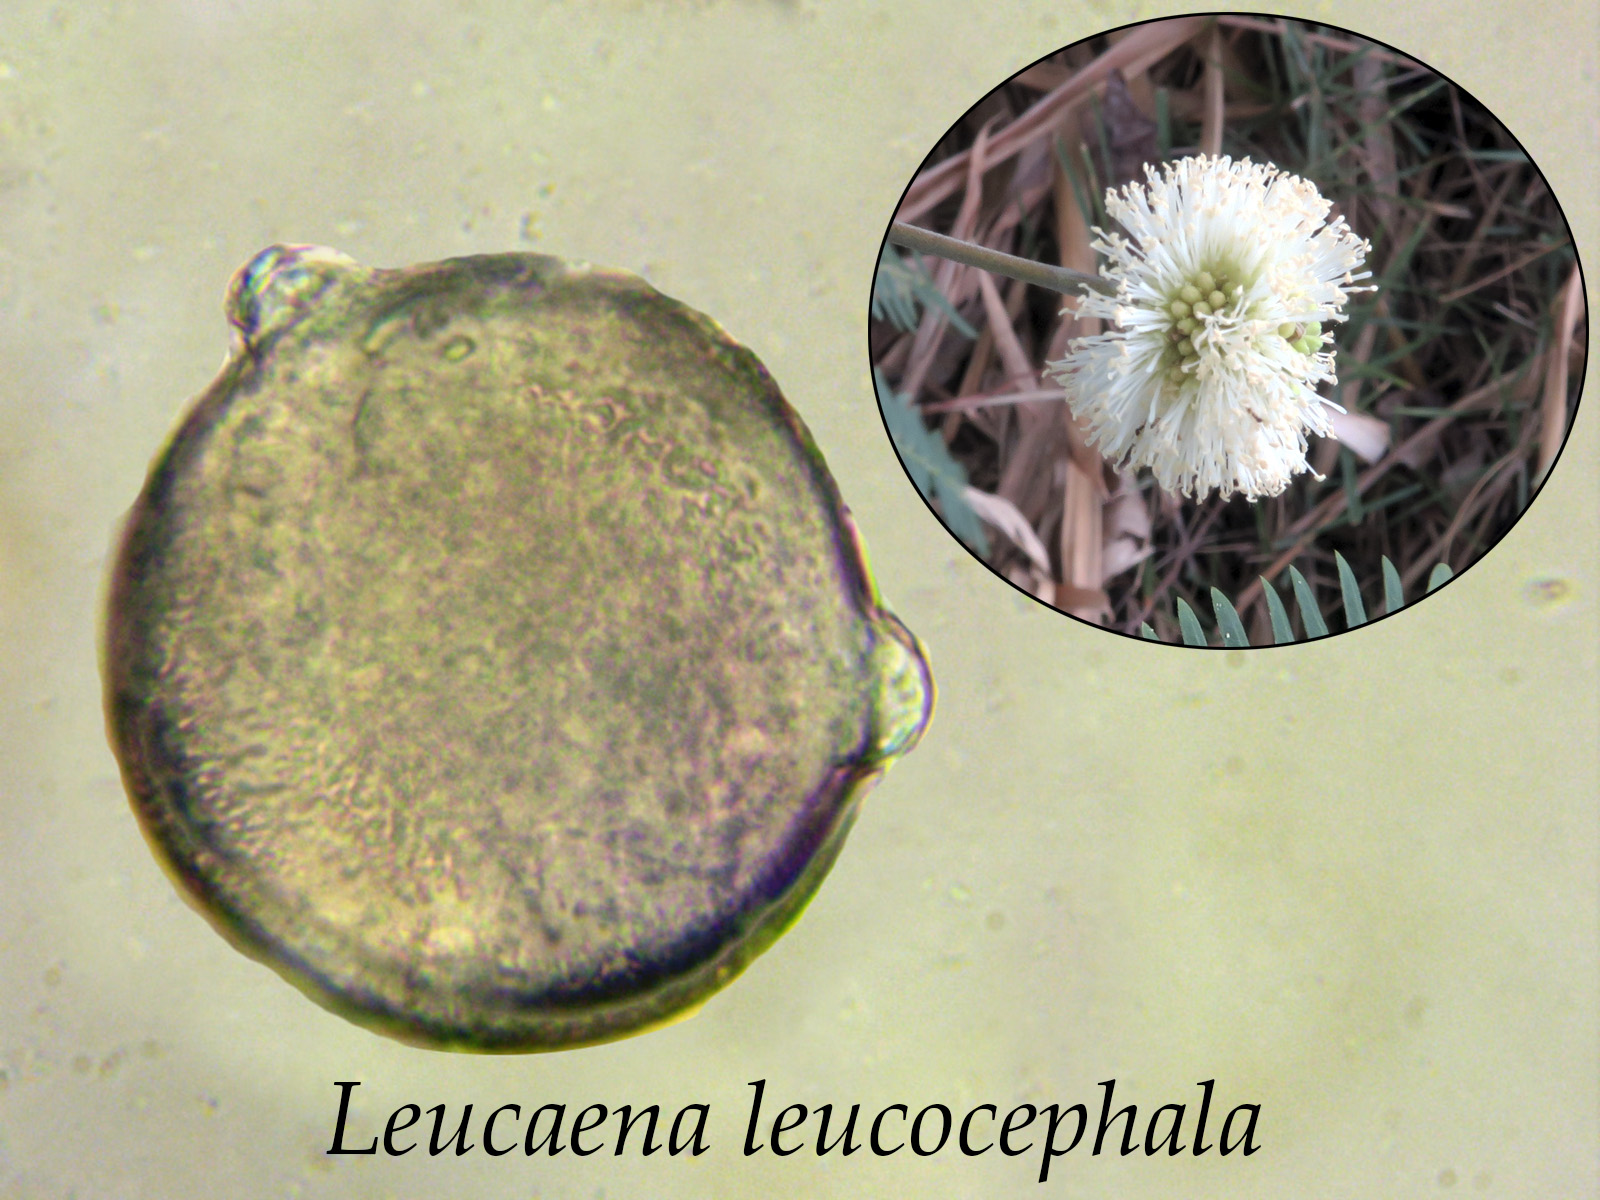 Leucaenaleucocephala.jpg